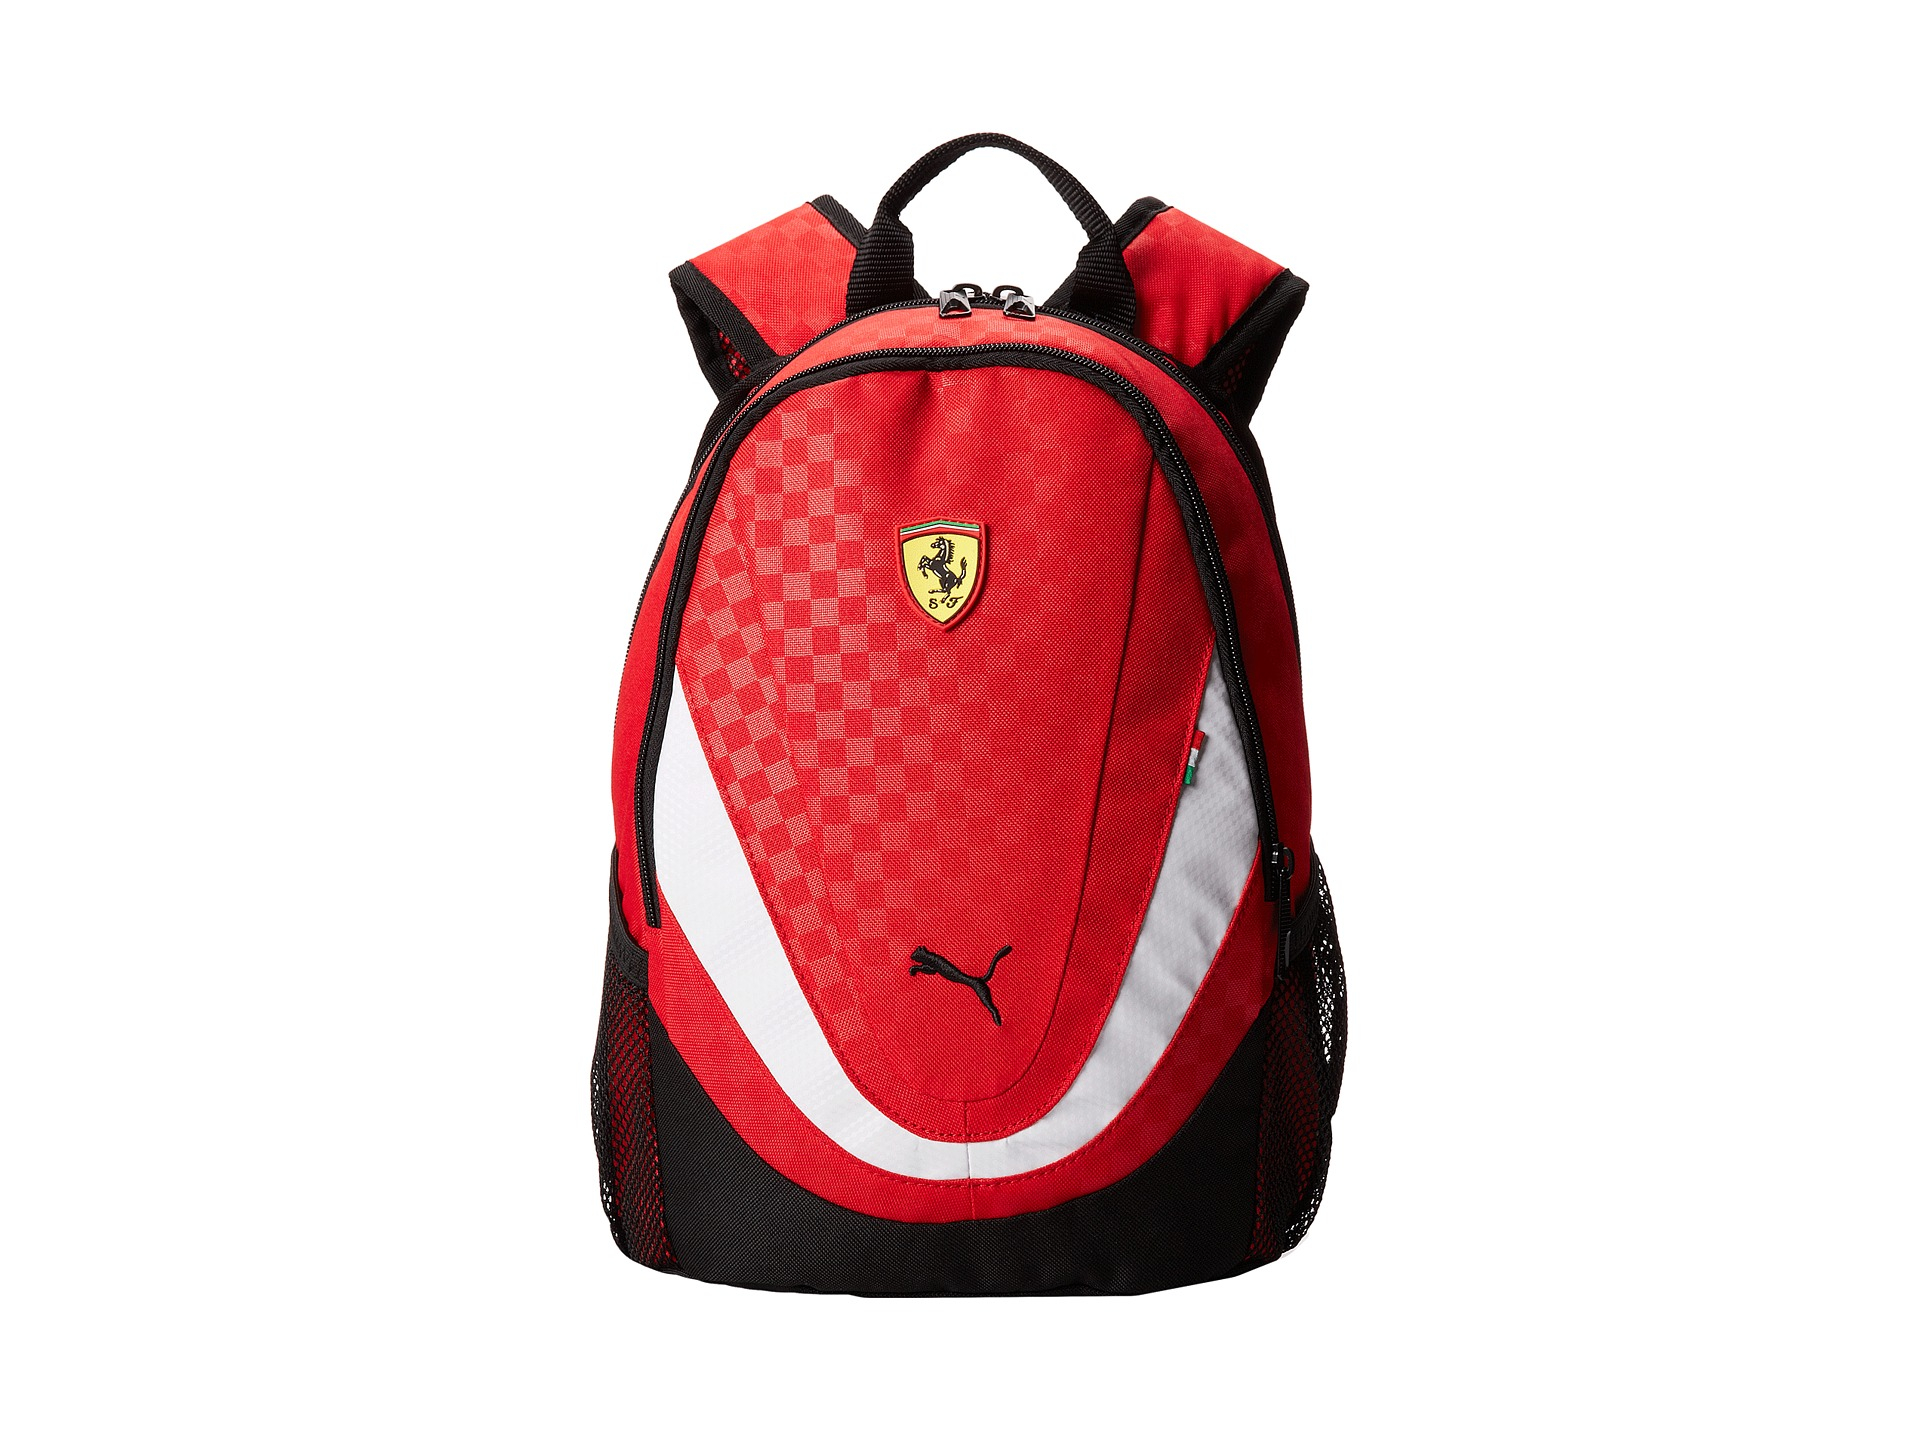 PUMA Ferrari Replica Small Backpack in Red - Lyst